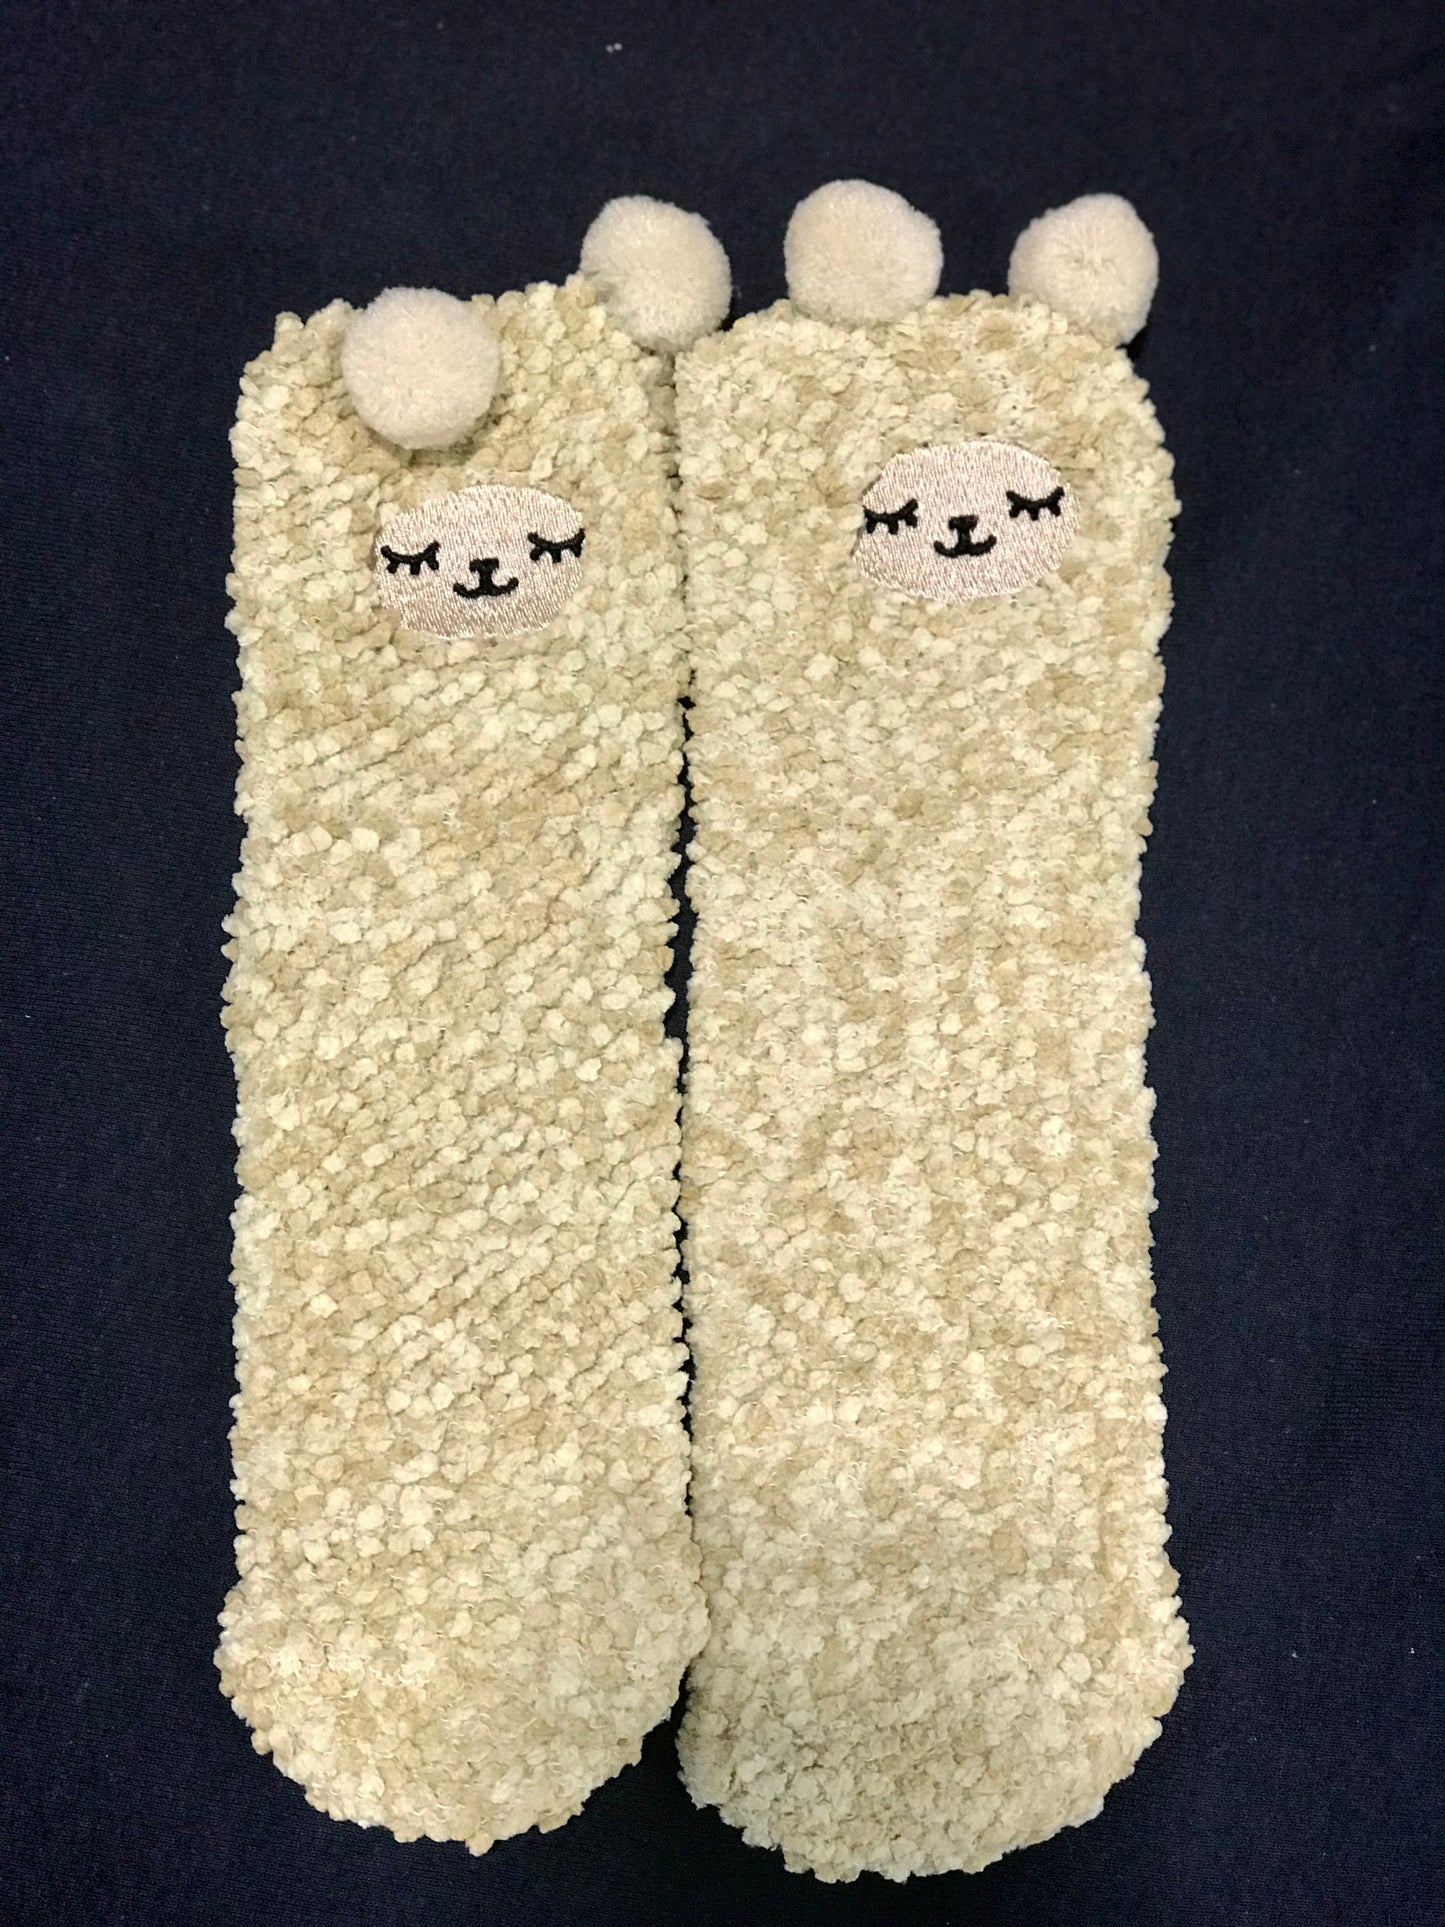 Sheep Socks in a Box